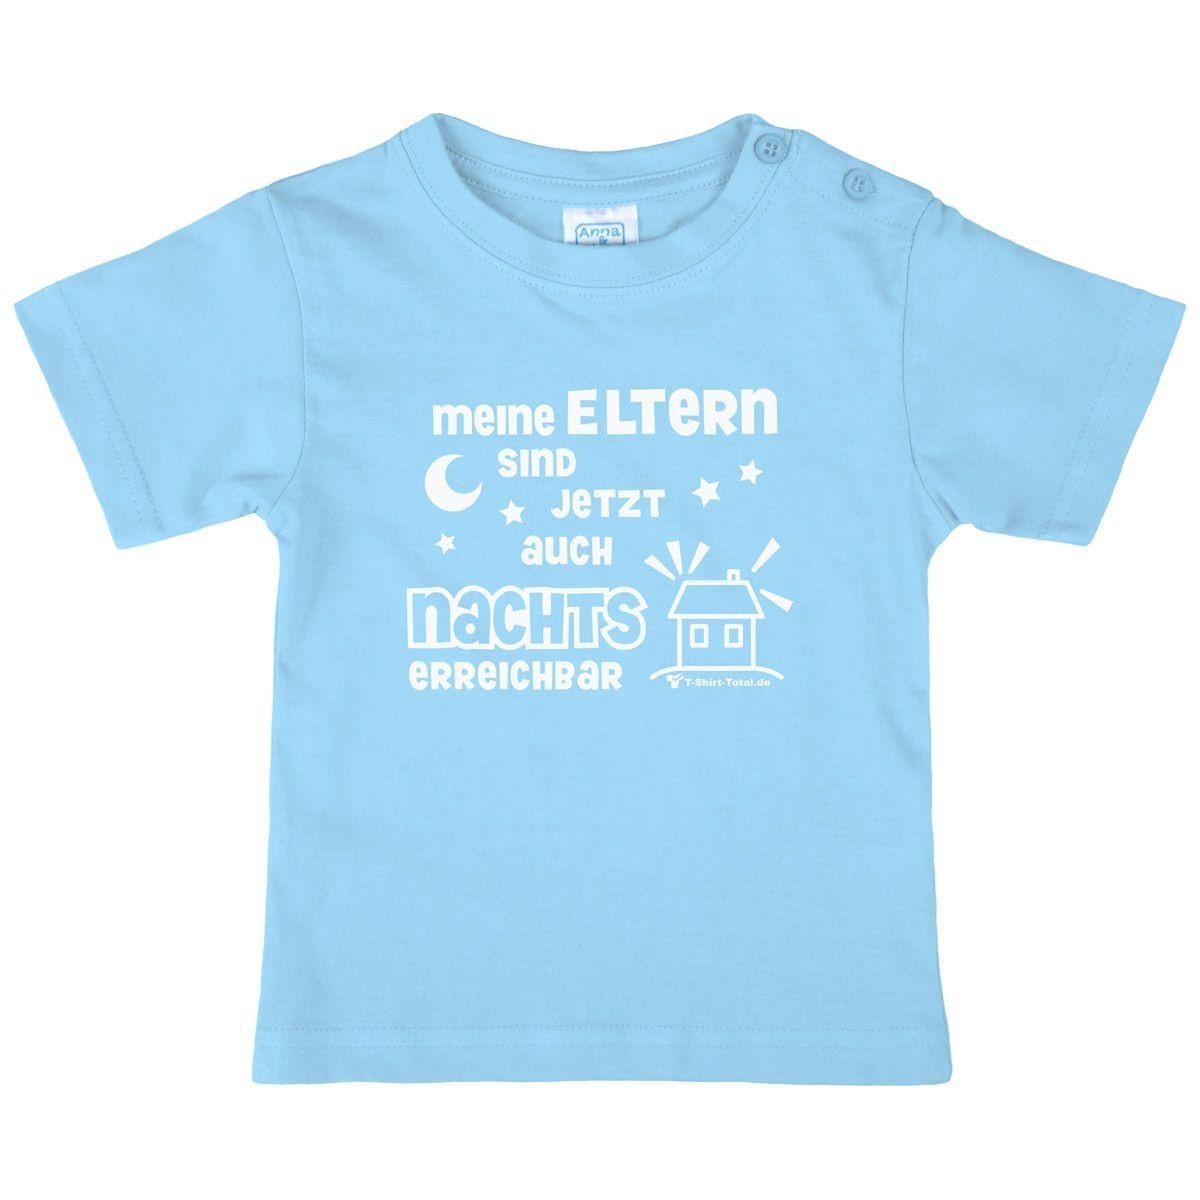 Eltern nachts erreichbar Kinder T-Shirt hellblau 56 / 62